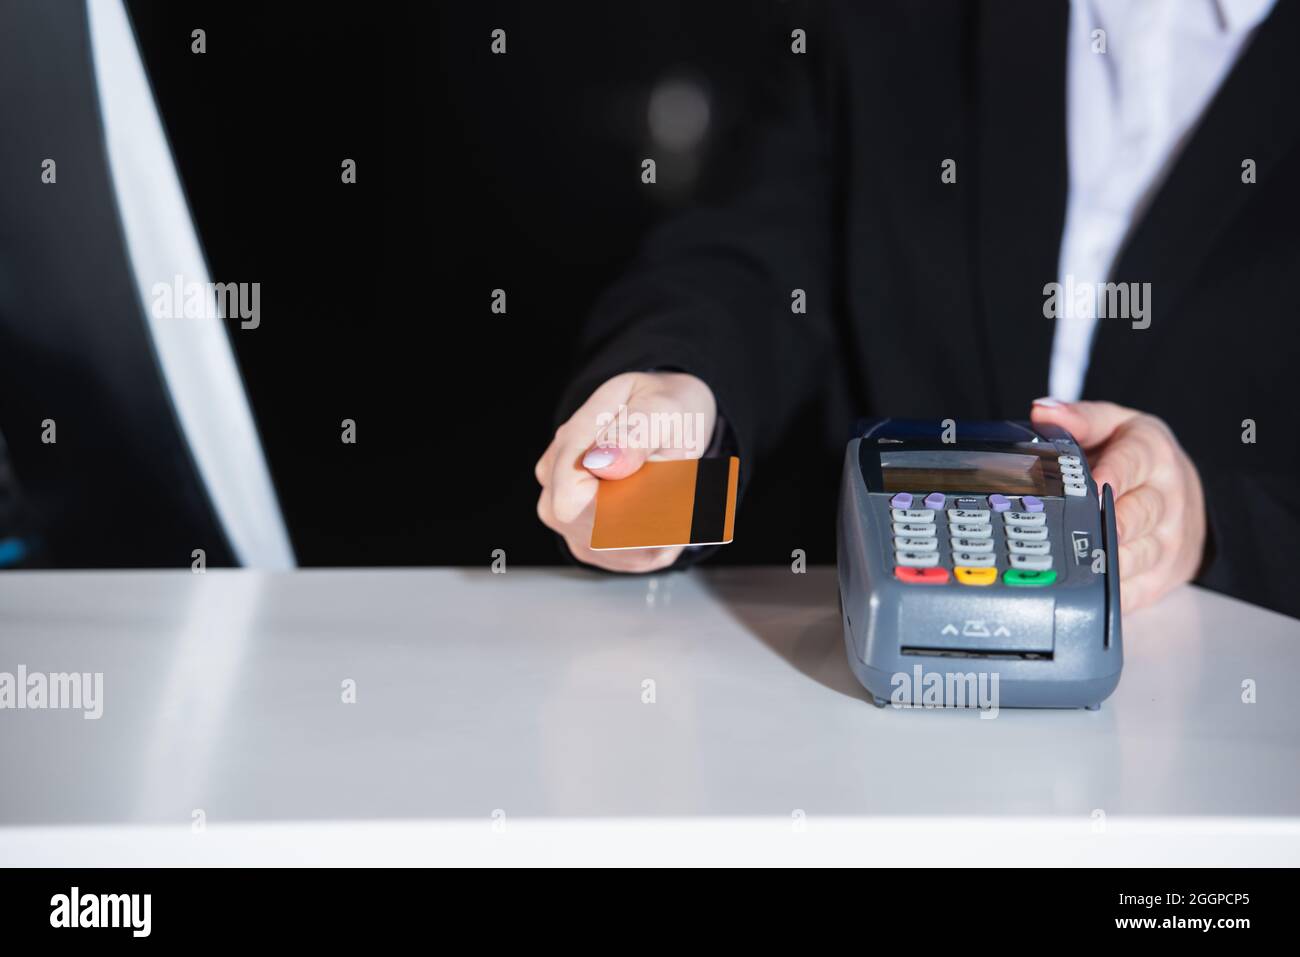 Beschnittene Ansicht des Administrators, der die Kreditkarte in der Nähe des Zahlungsterminals im Hotel hält Stockfoto